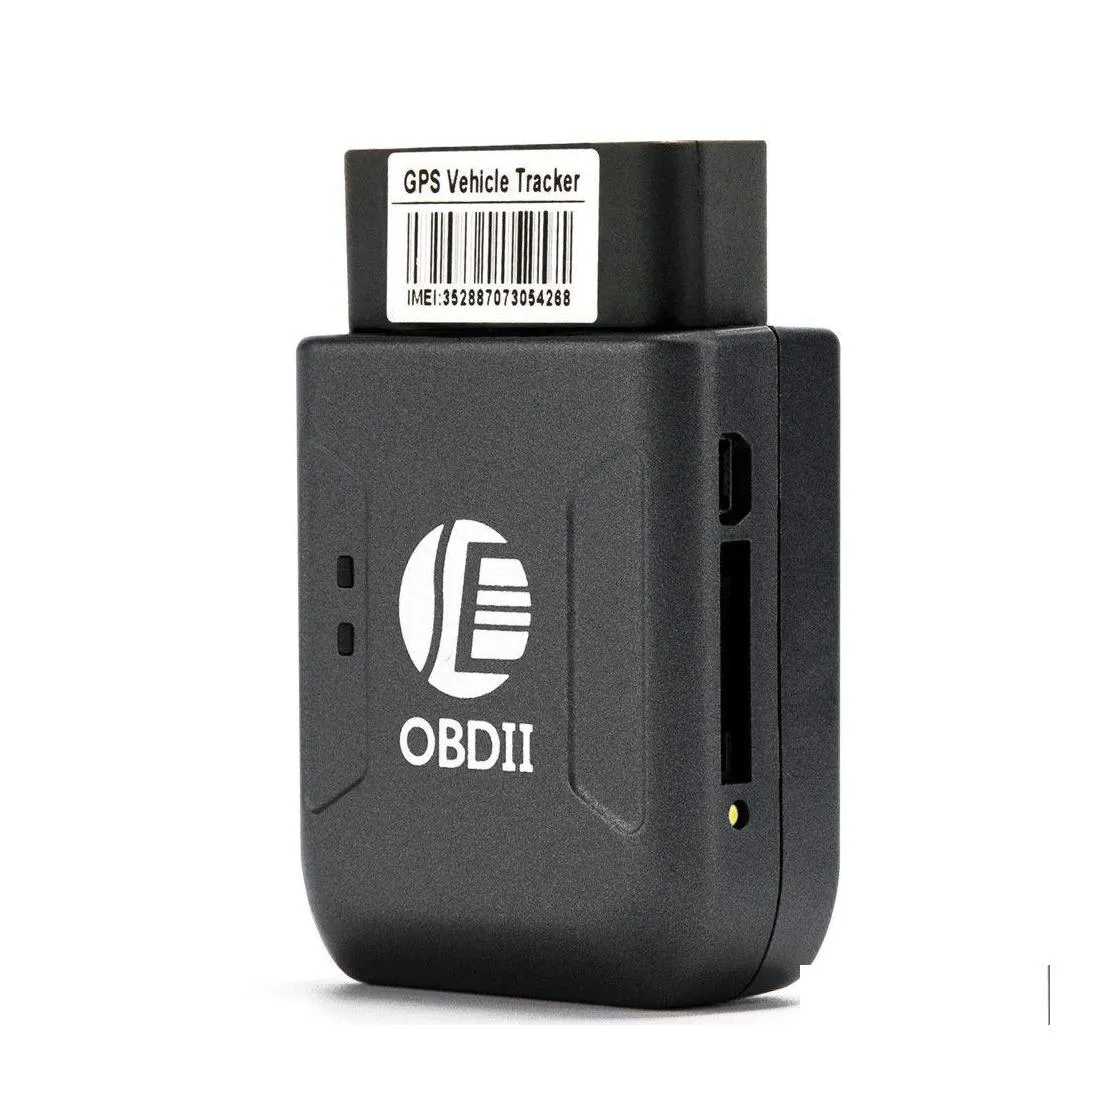 Acessórios para carros GPS OBD2 Tracker Tk206 OBD 2 Tempo real GSM Quad Band Antitheft Vibração Alarm GPRS Mini Rastreamento II Drop Deliver